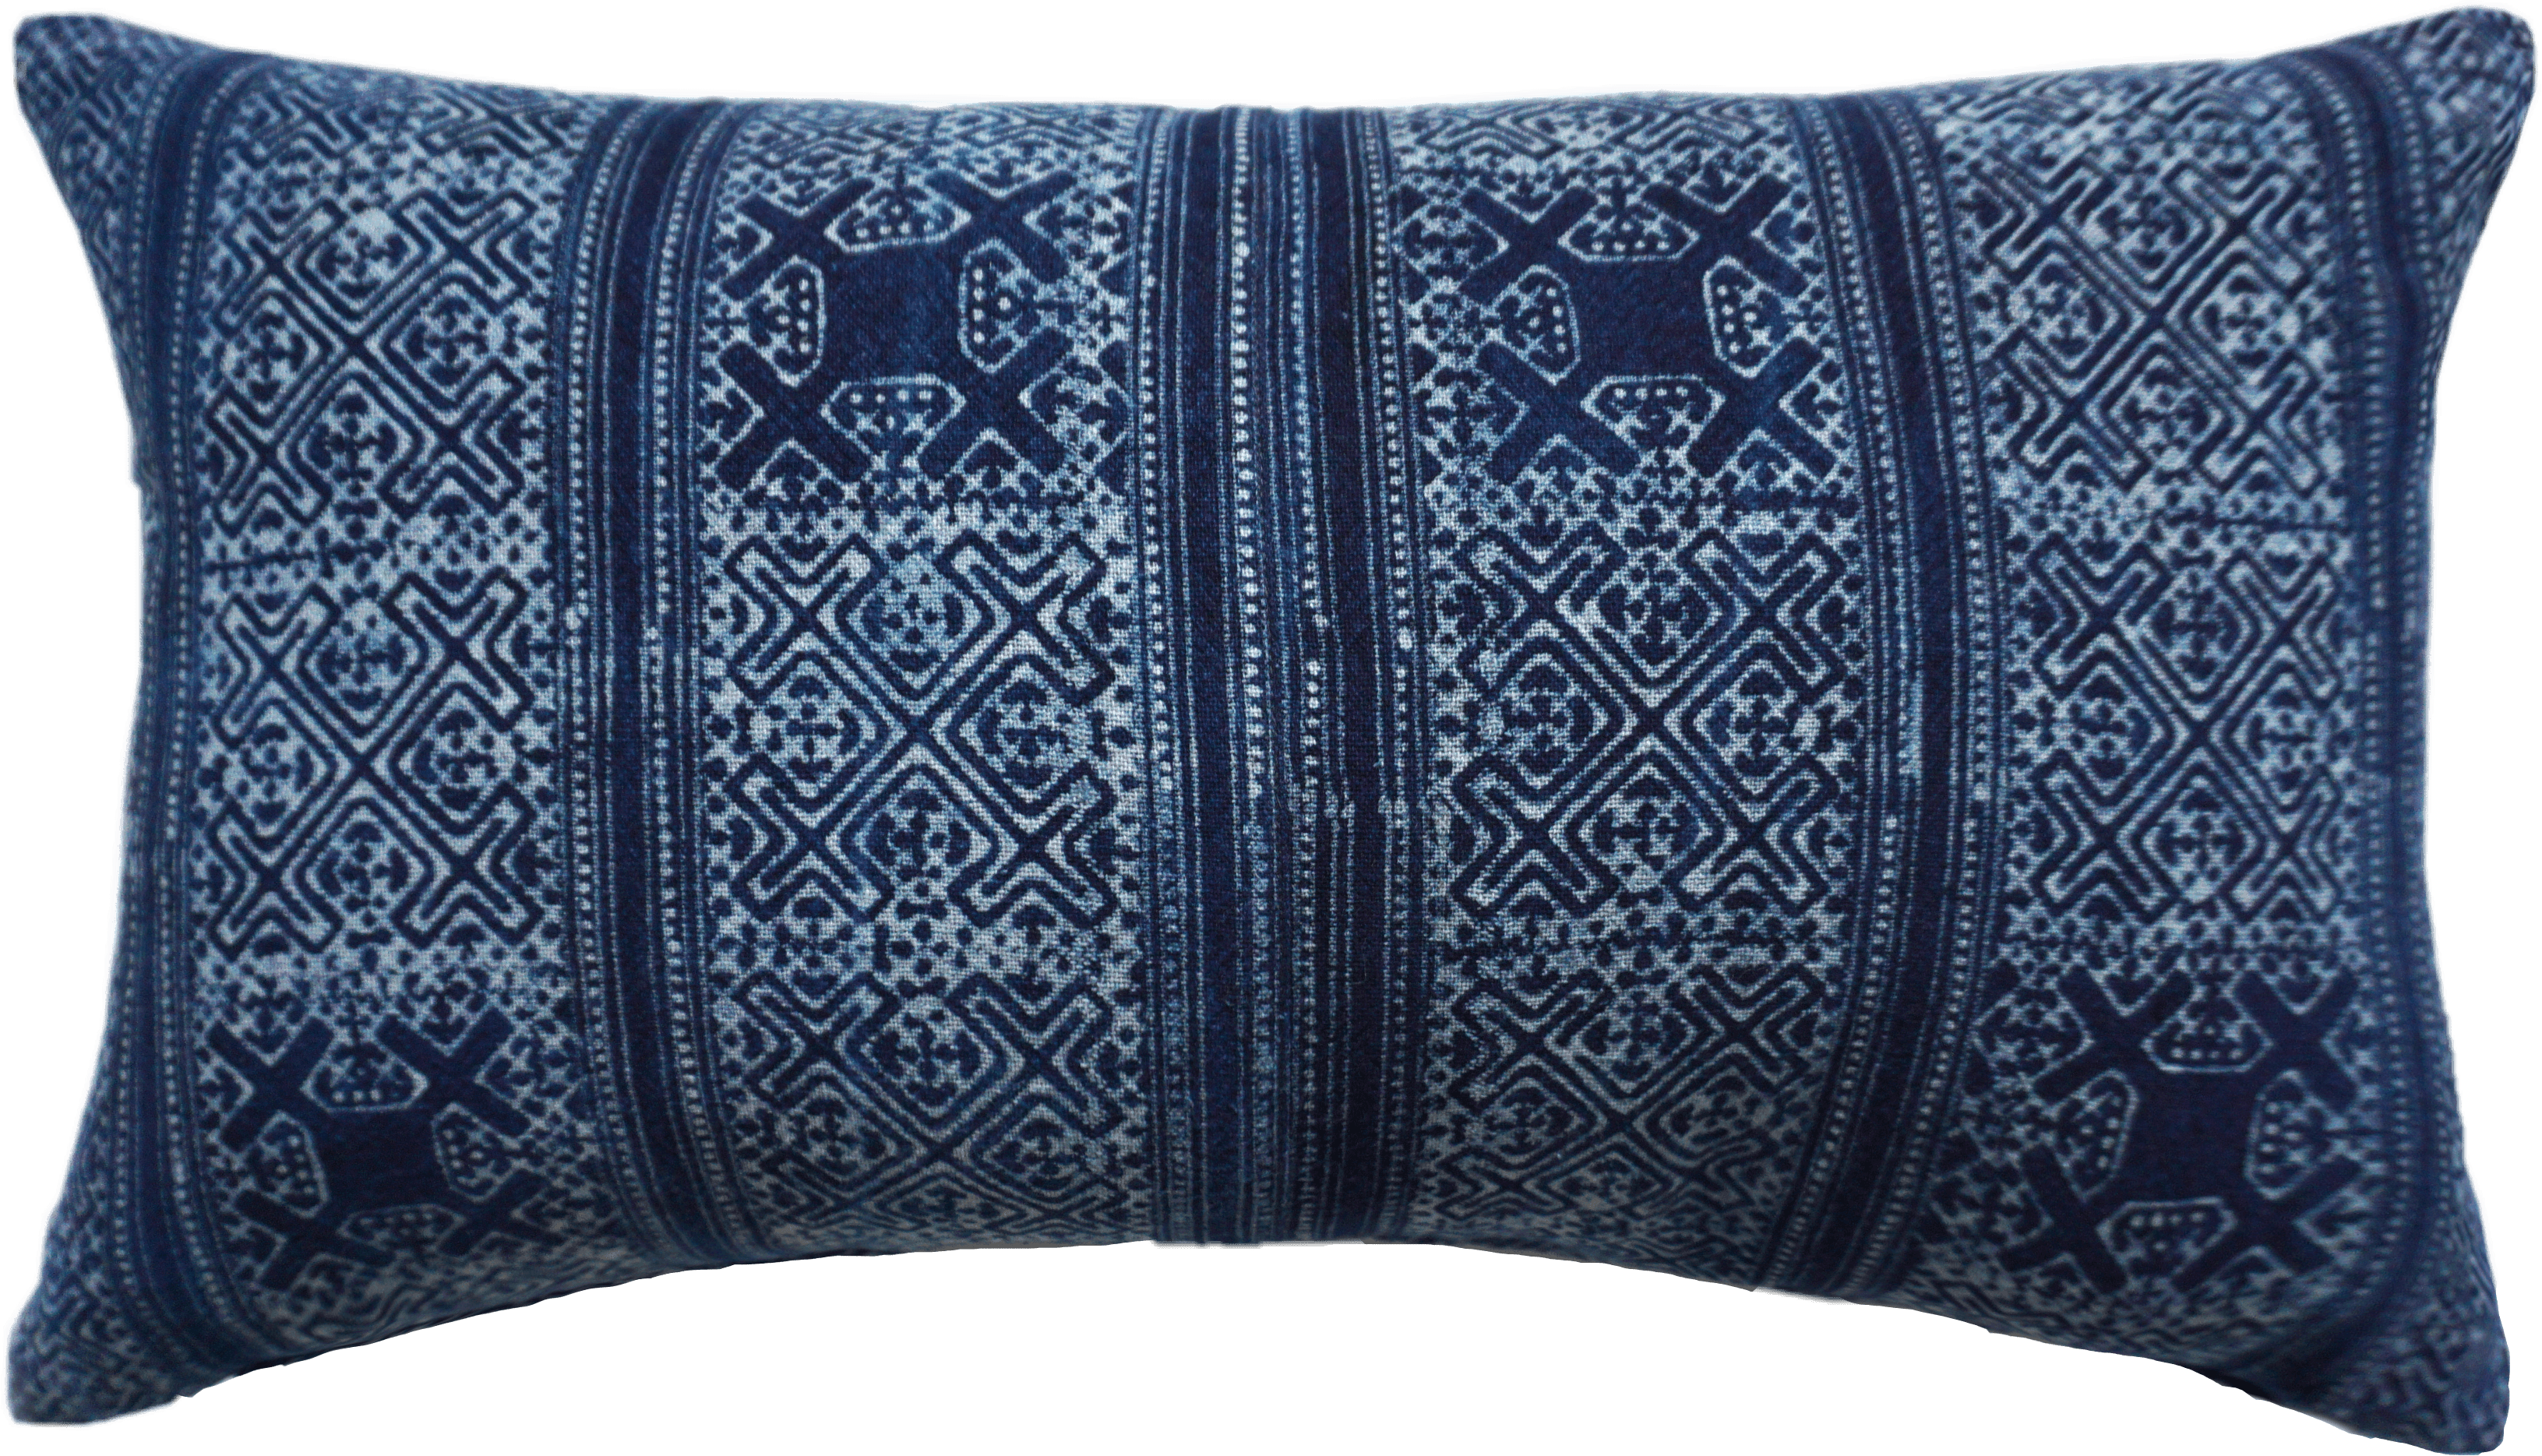 http://indigojuniper.com/cdn/shop/products/indigo-hand-woven-batik-pillow-cover-pillow-cover-indigo-juniper-281176.png?v=1623133119